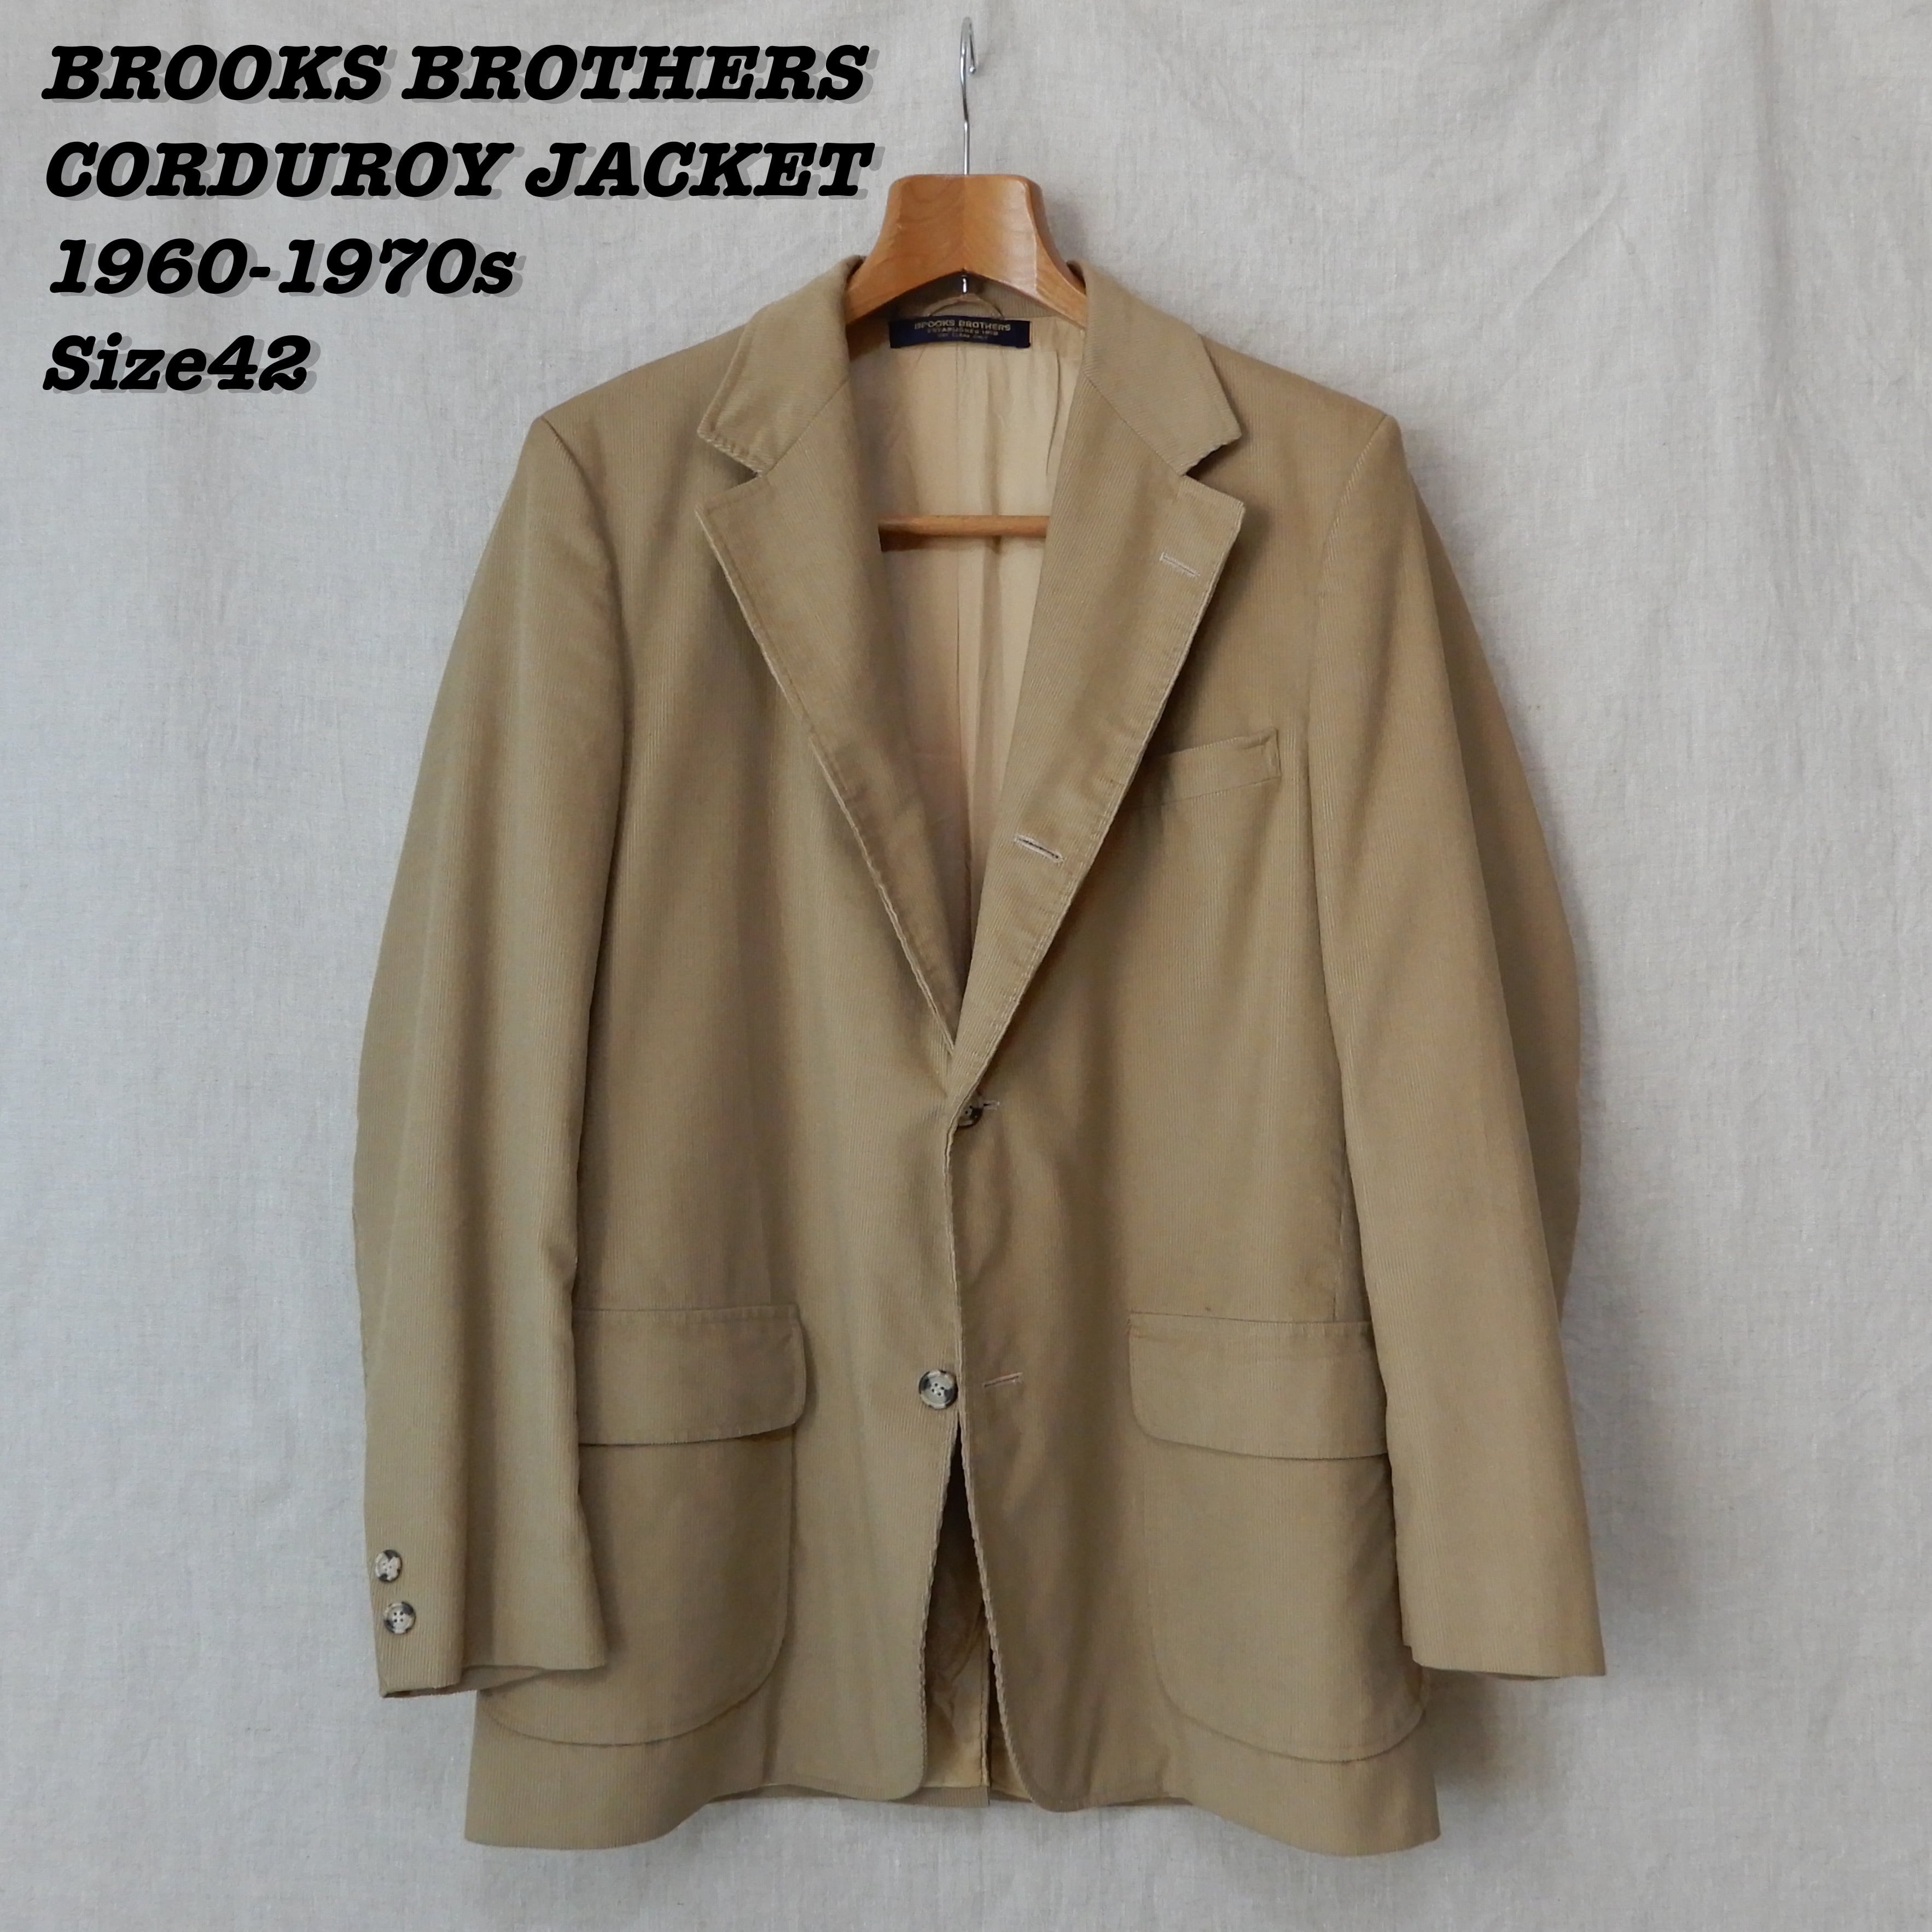 BROOKS BROTHERS Corduroy Jacket 1960-70s - テーラードジャケット